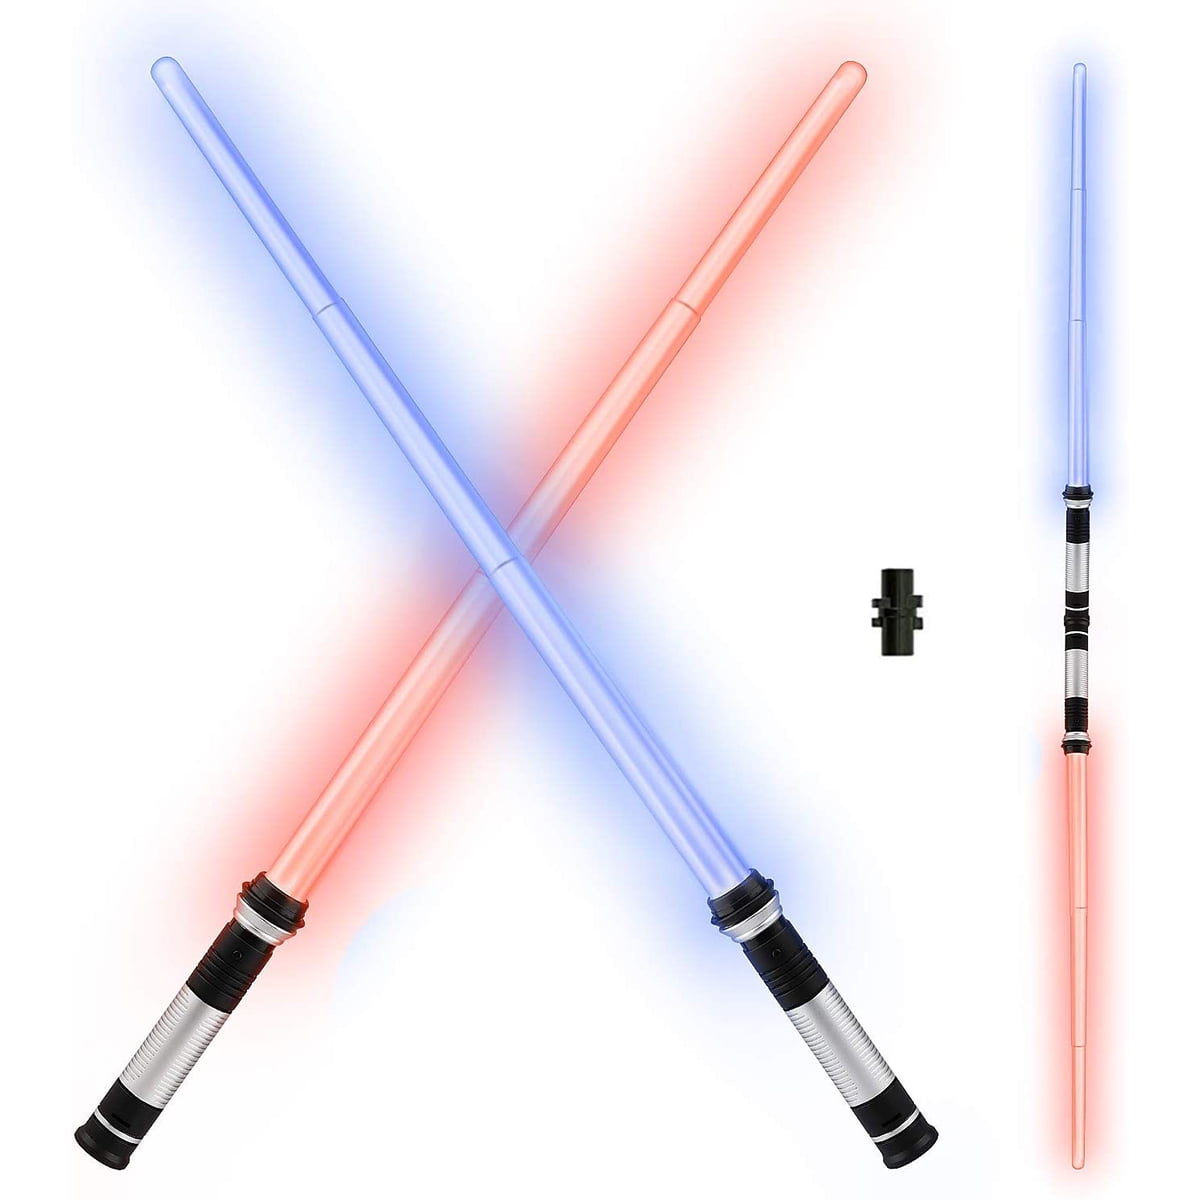 FX Sound Light Saber Sword Toy LOWEST PRICE LOT OF 2 Lightsaber Star Wars 